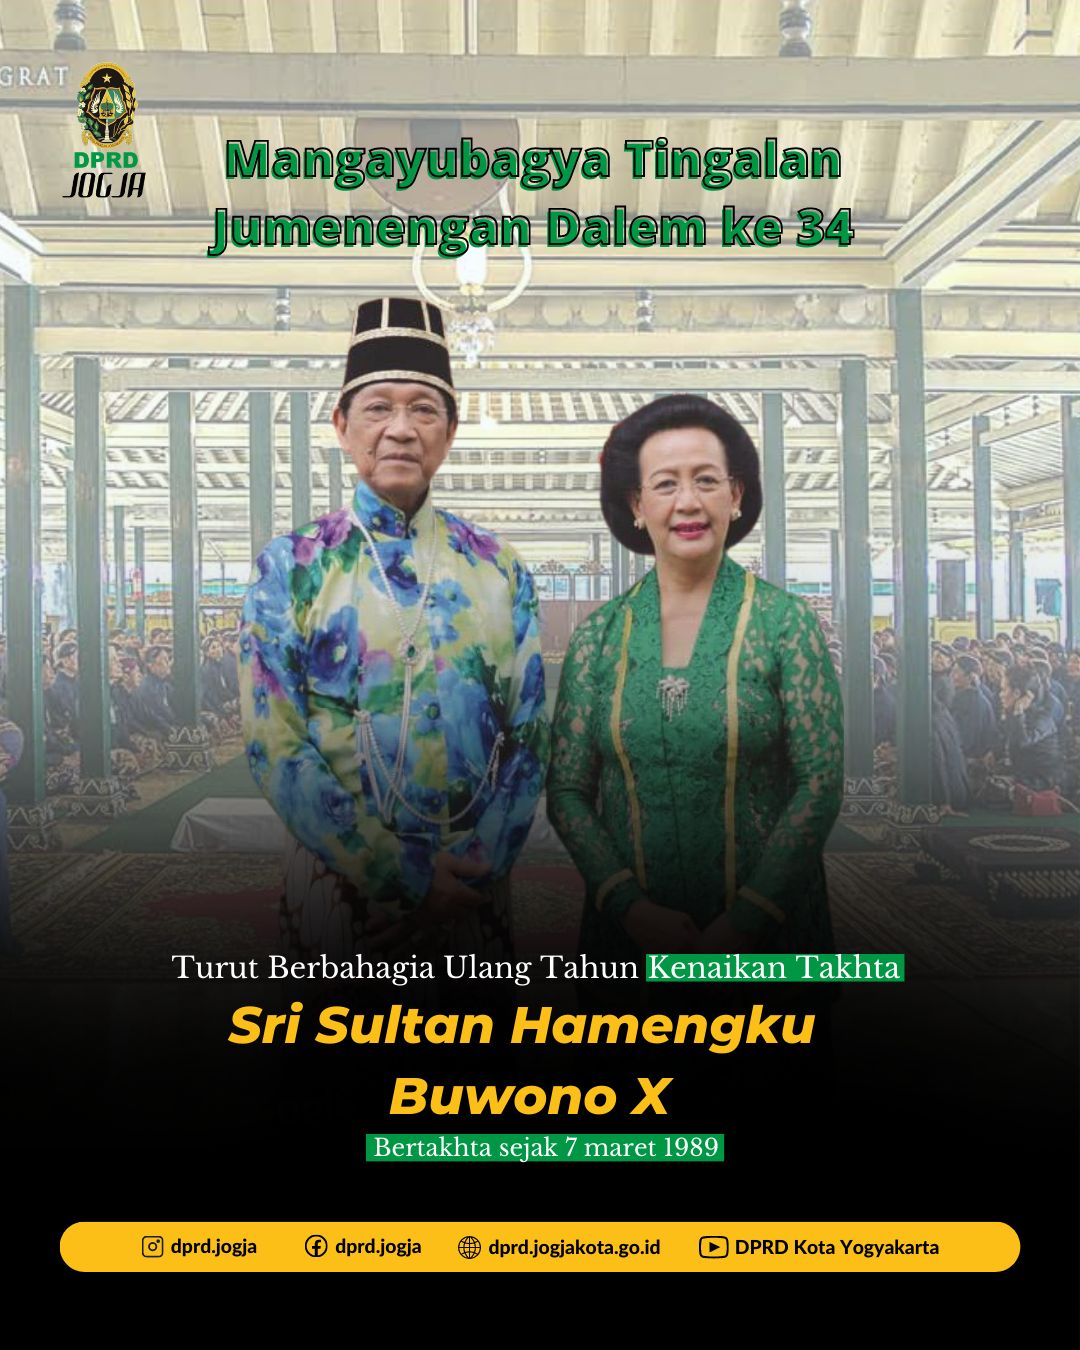 Sri Sultan Hamengku Buwono X Genap 34 Tahun Bertakhta sebagai Raja Keraton Kasultanan Yogyakarta